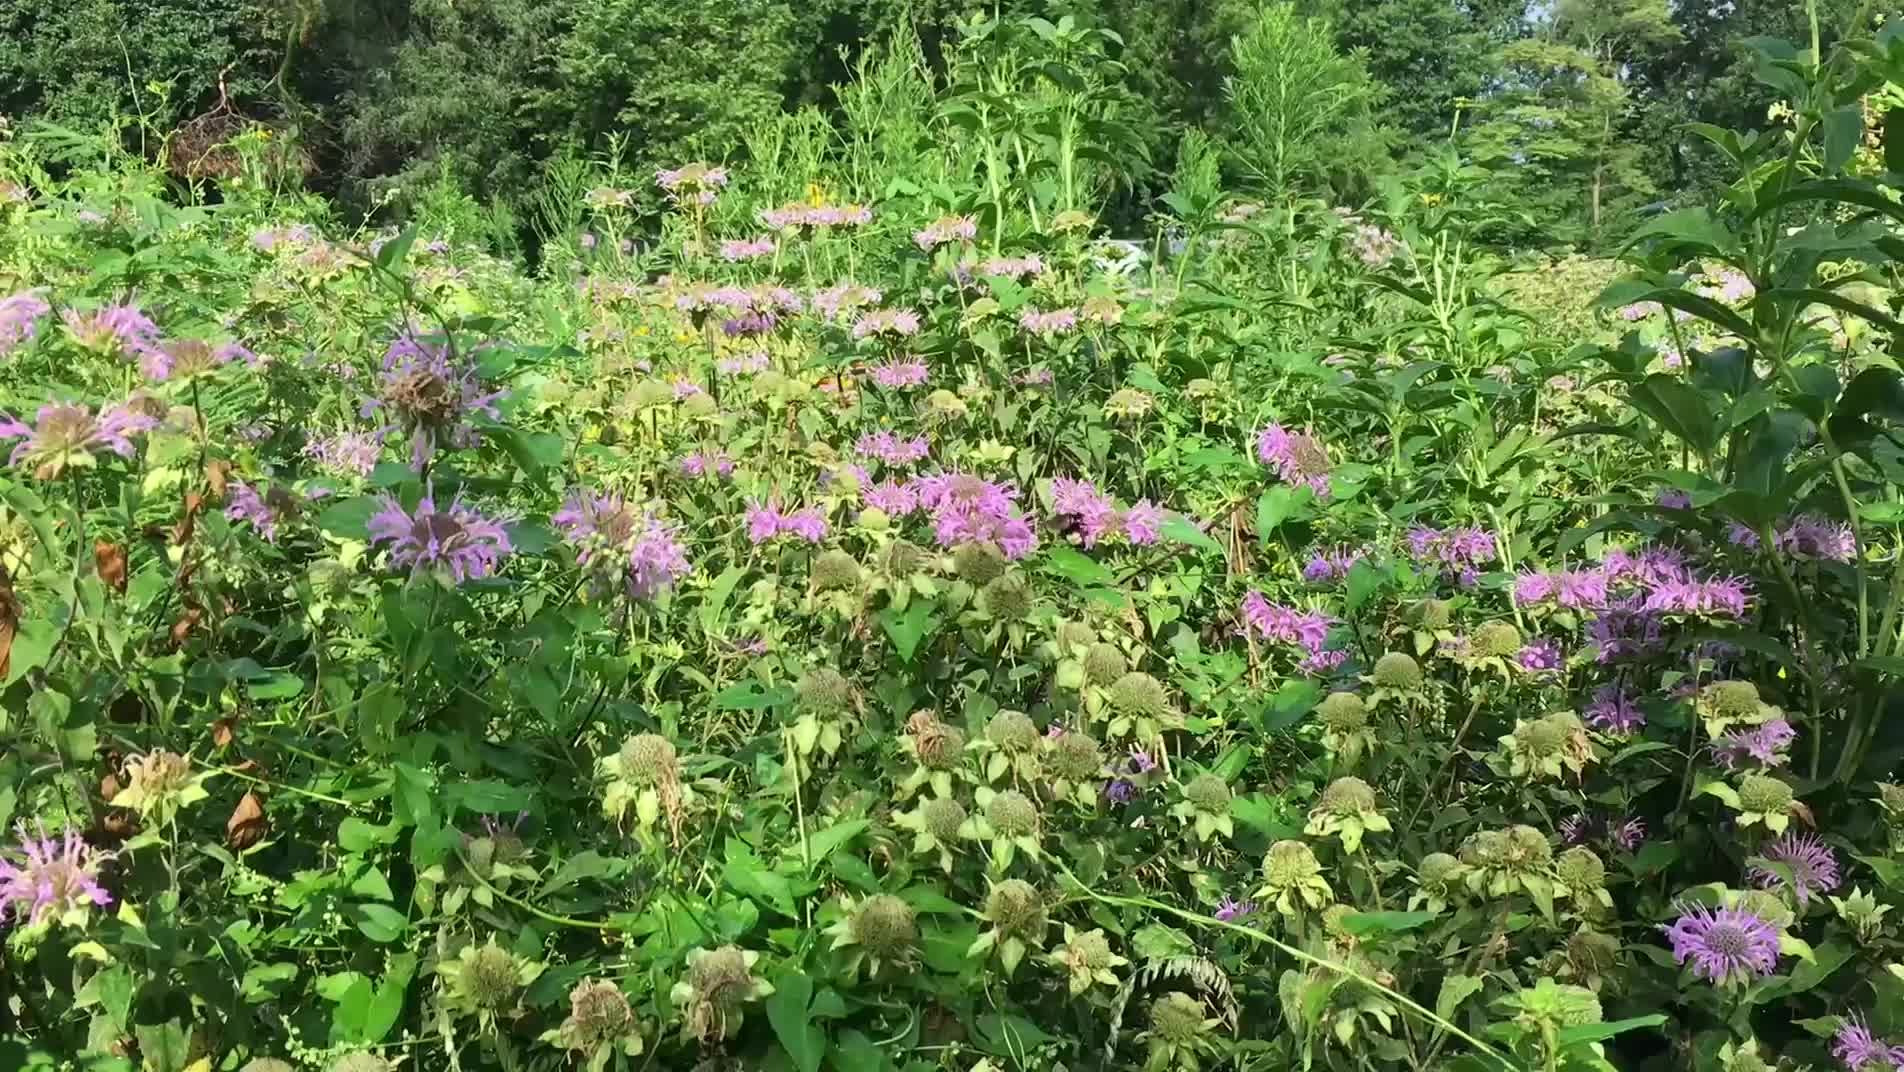 30-Seconds on Campus: Pollinator Garden